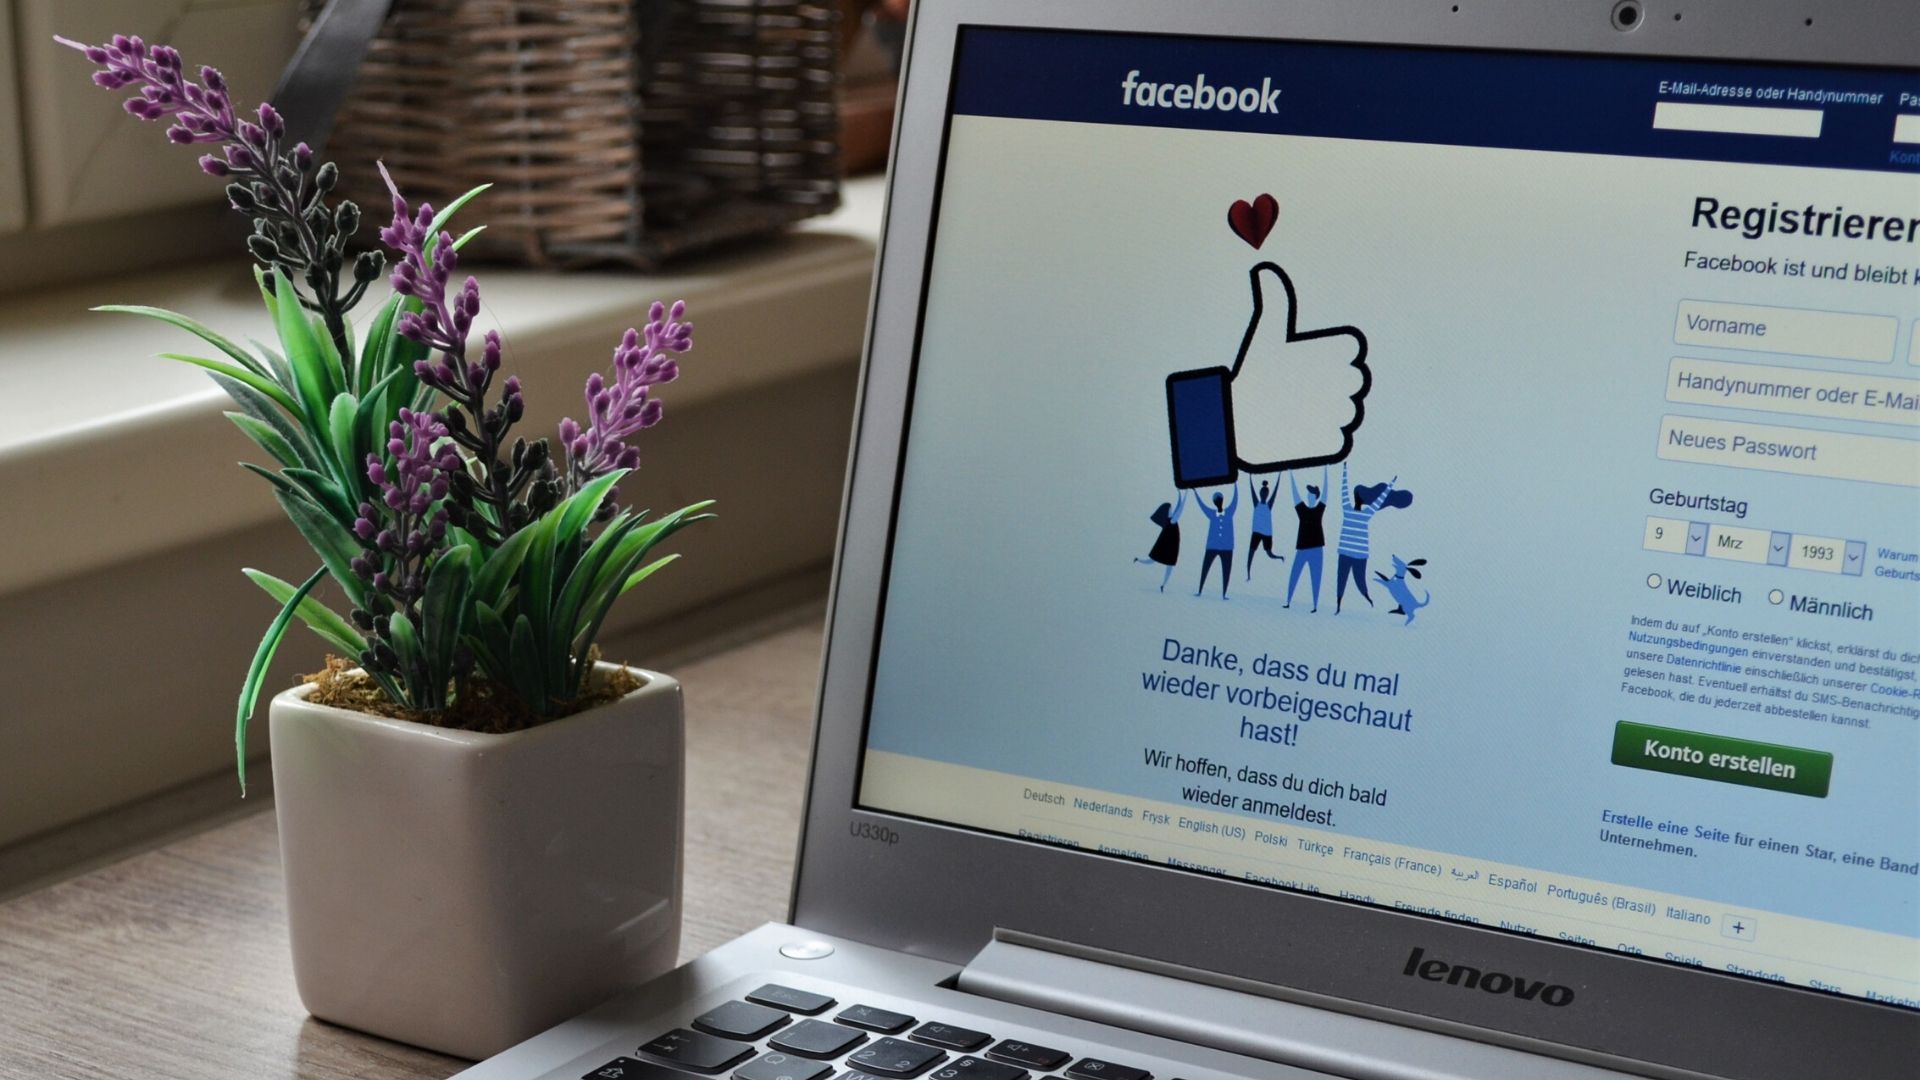 Facebook reste n°1 des réseaux sociaux en France (1)